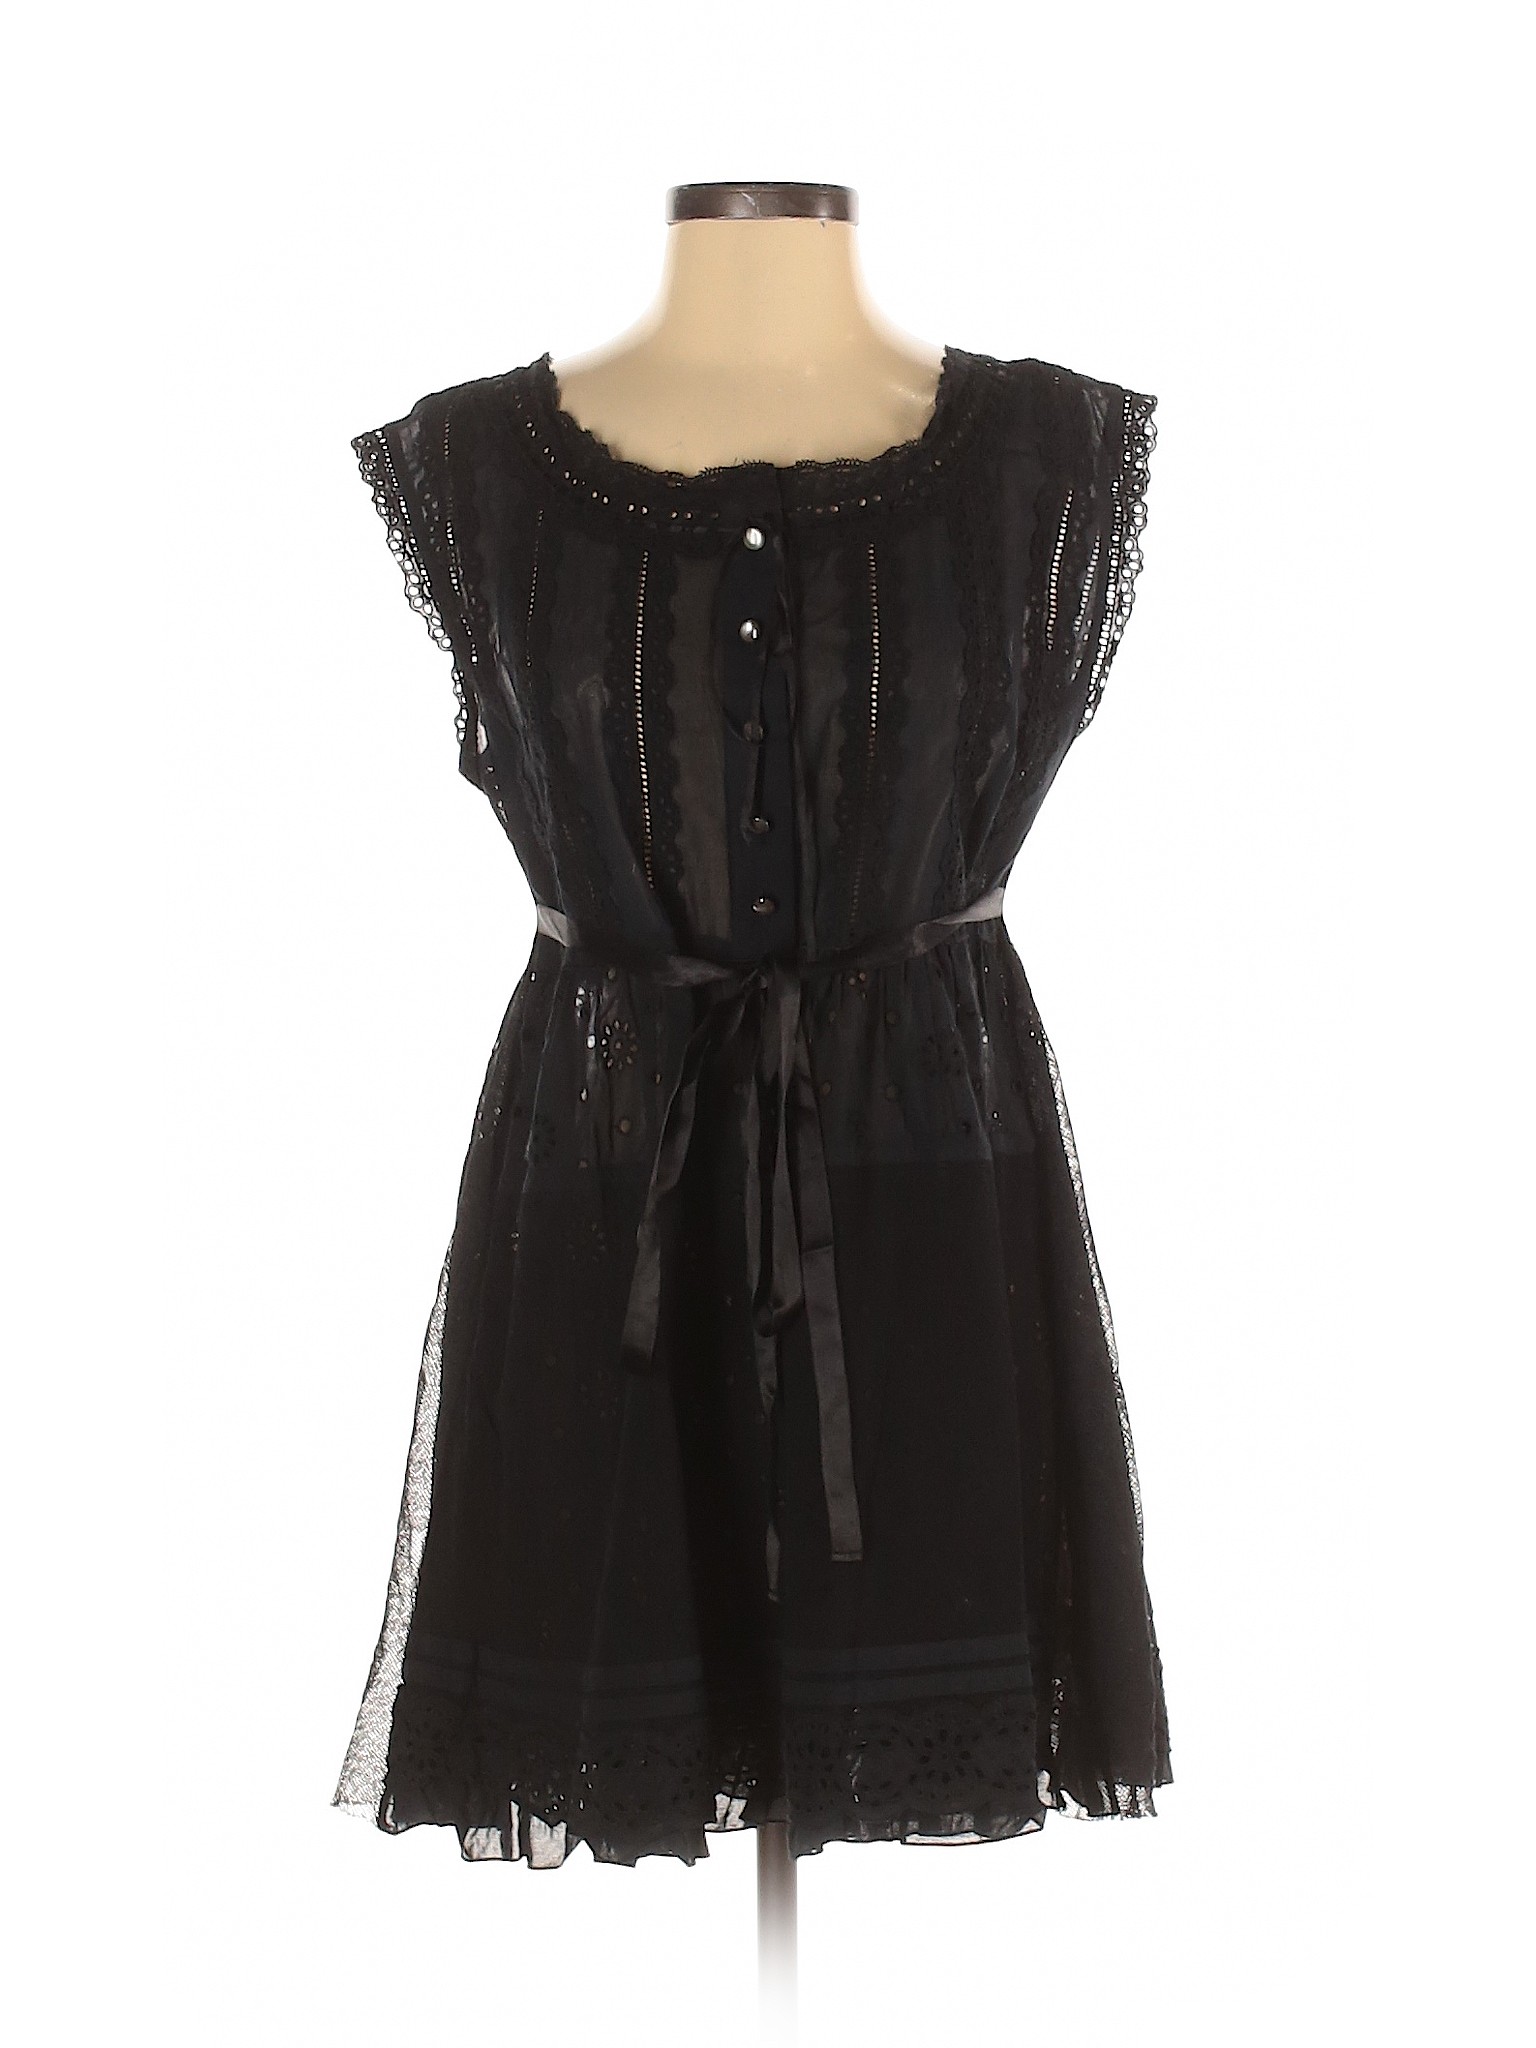 Marc by Marc Jacobs Women Black Casual Dress 4 | eBay